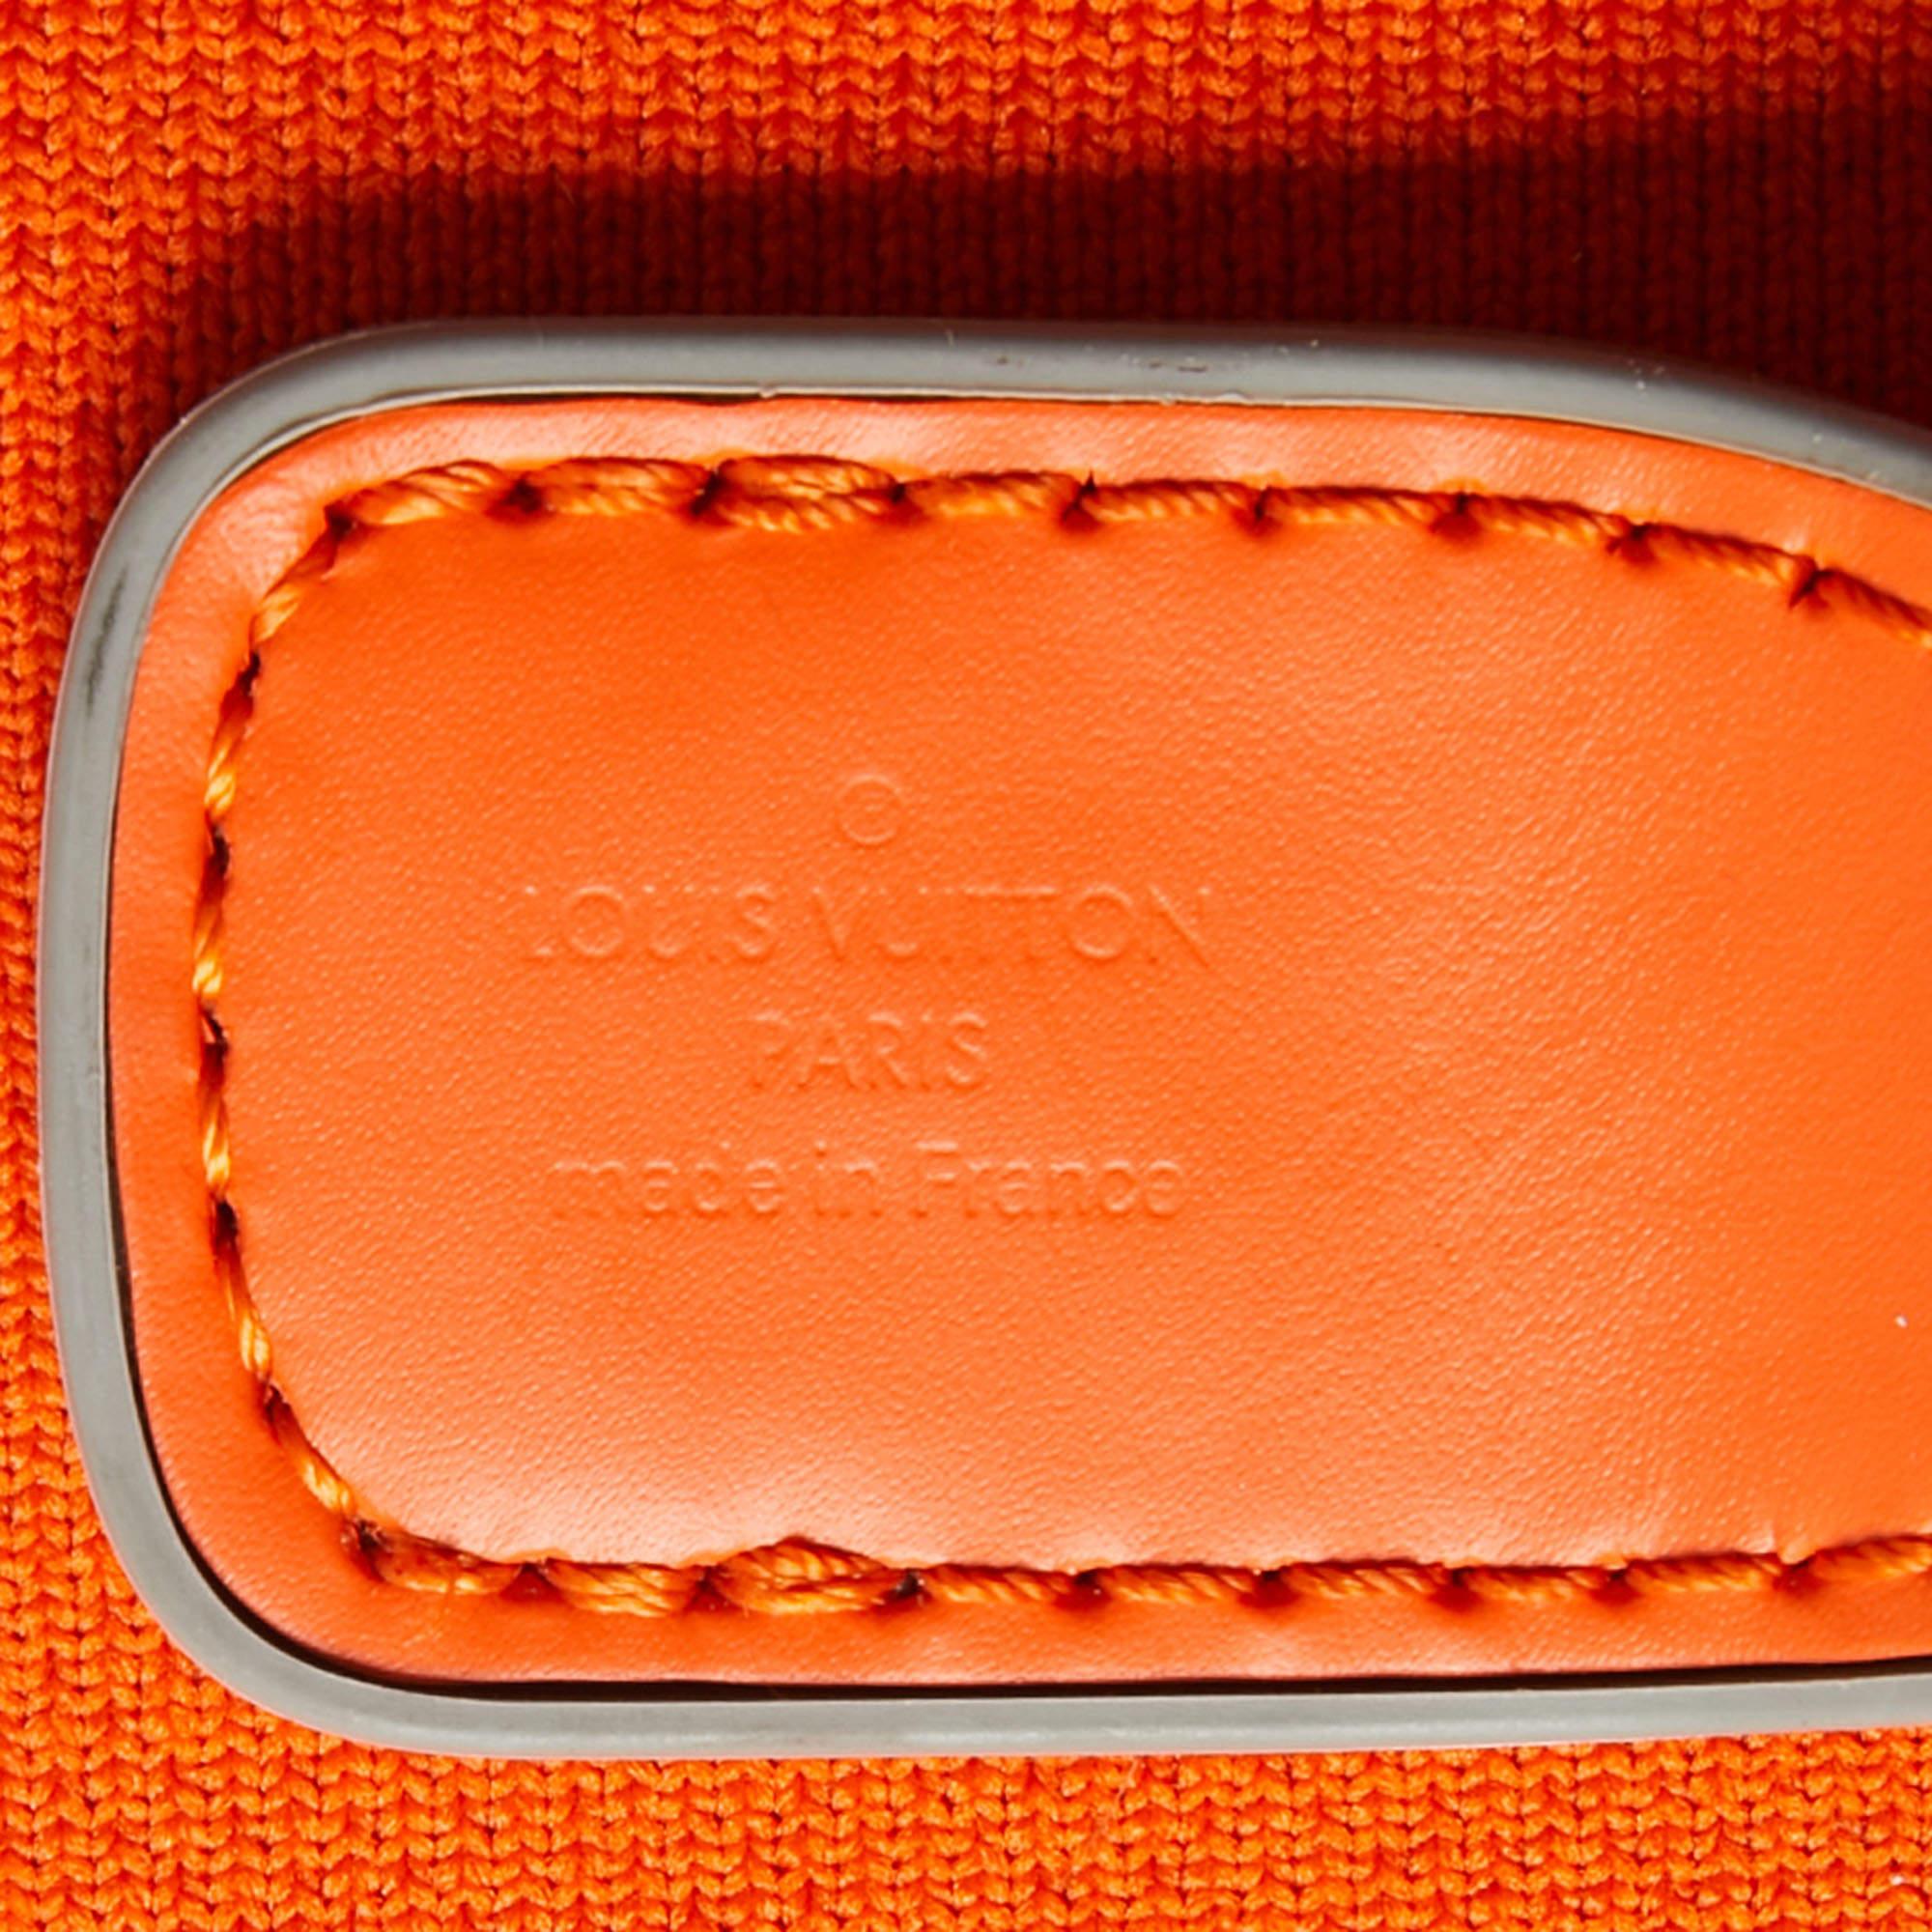 Louis Vuitton Orange Monogram Knit Horizon Soft Duffle 55 Rolling Luggage 5